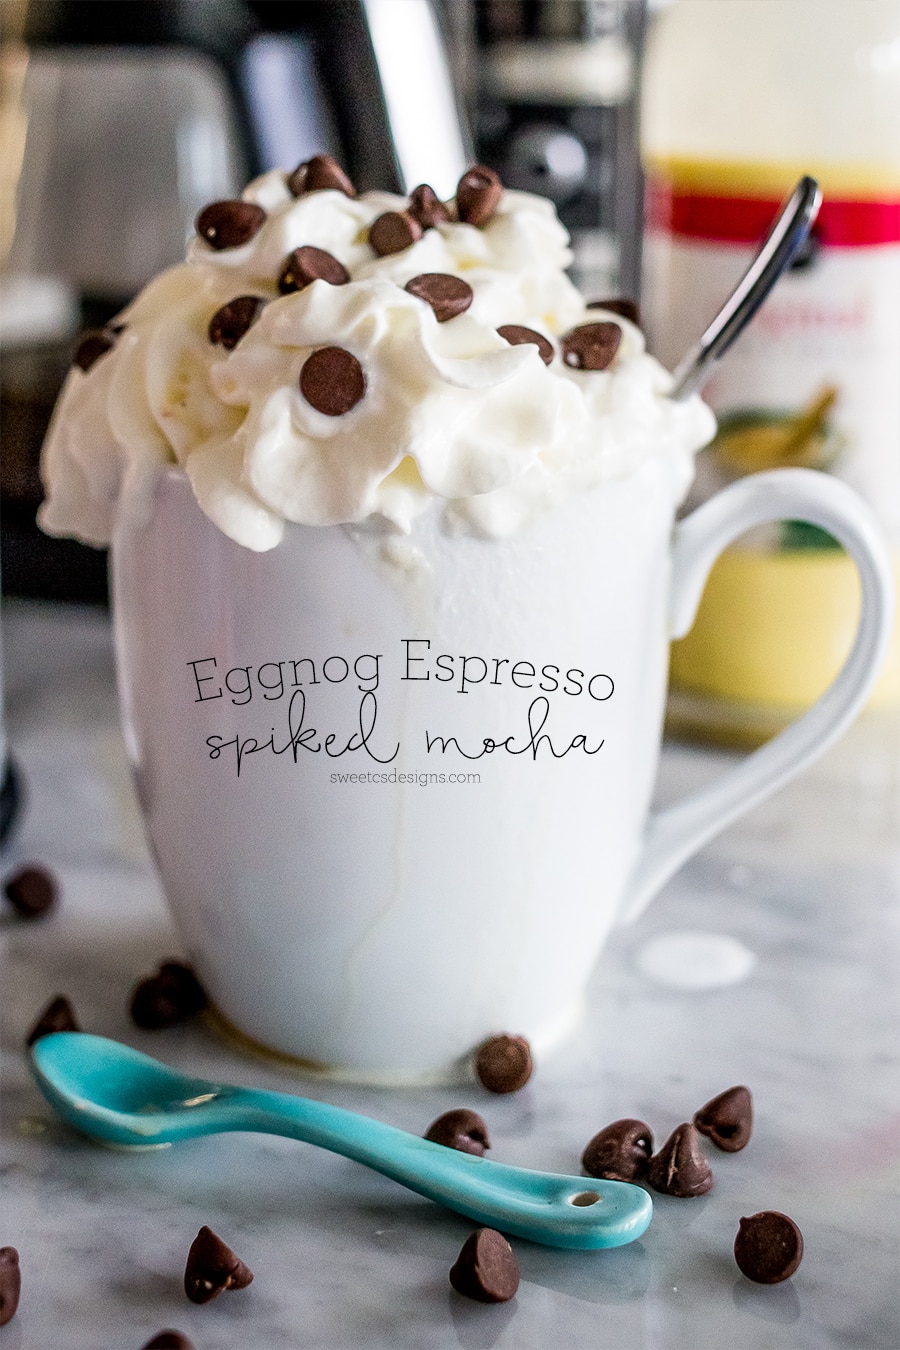 Eggnog Espresso Spiked Mocha- oh my yum!